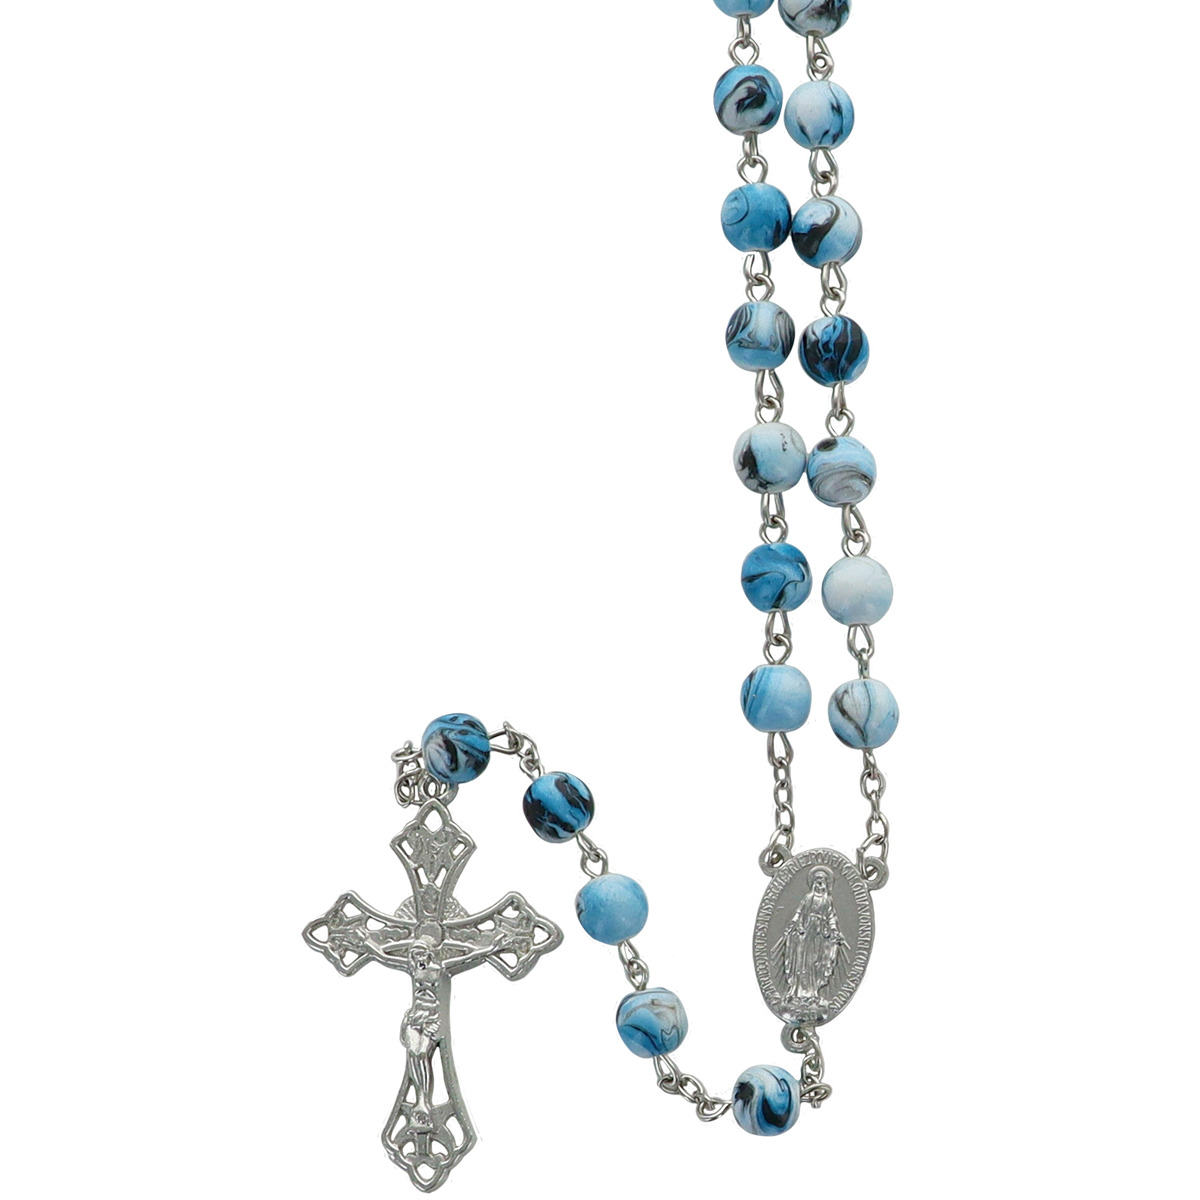 Chapelet grains en acrylique marbré, Ø 8 mm, chaîne couleur argentée, longueur au cœur 40 cm, croix avec Christ. Plusieurs couleurs.